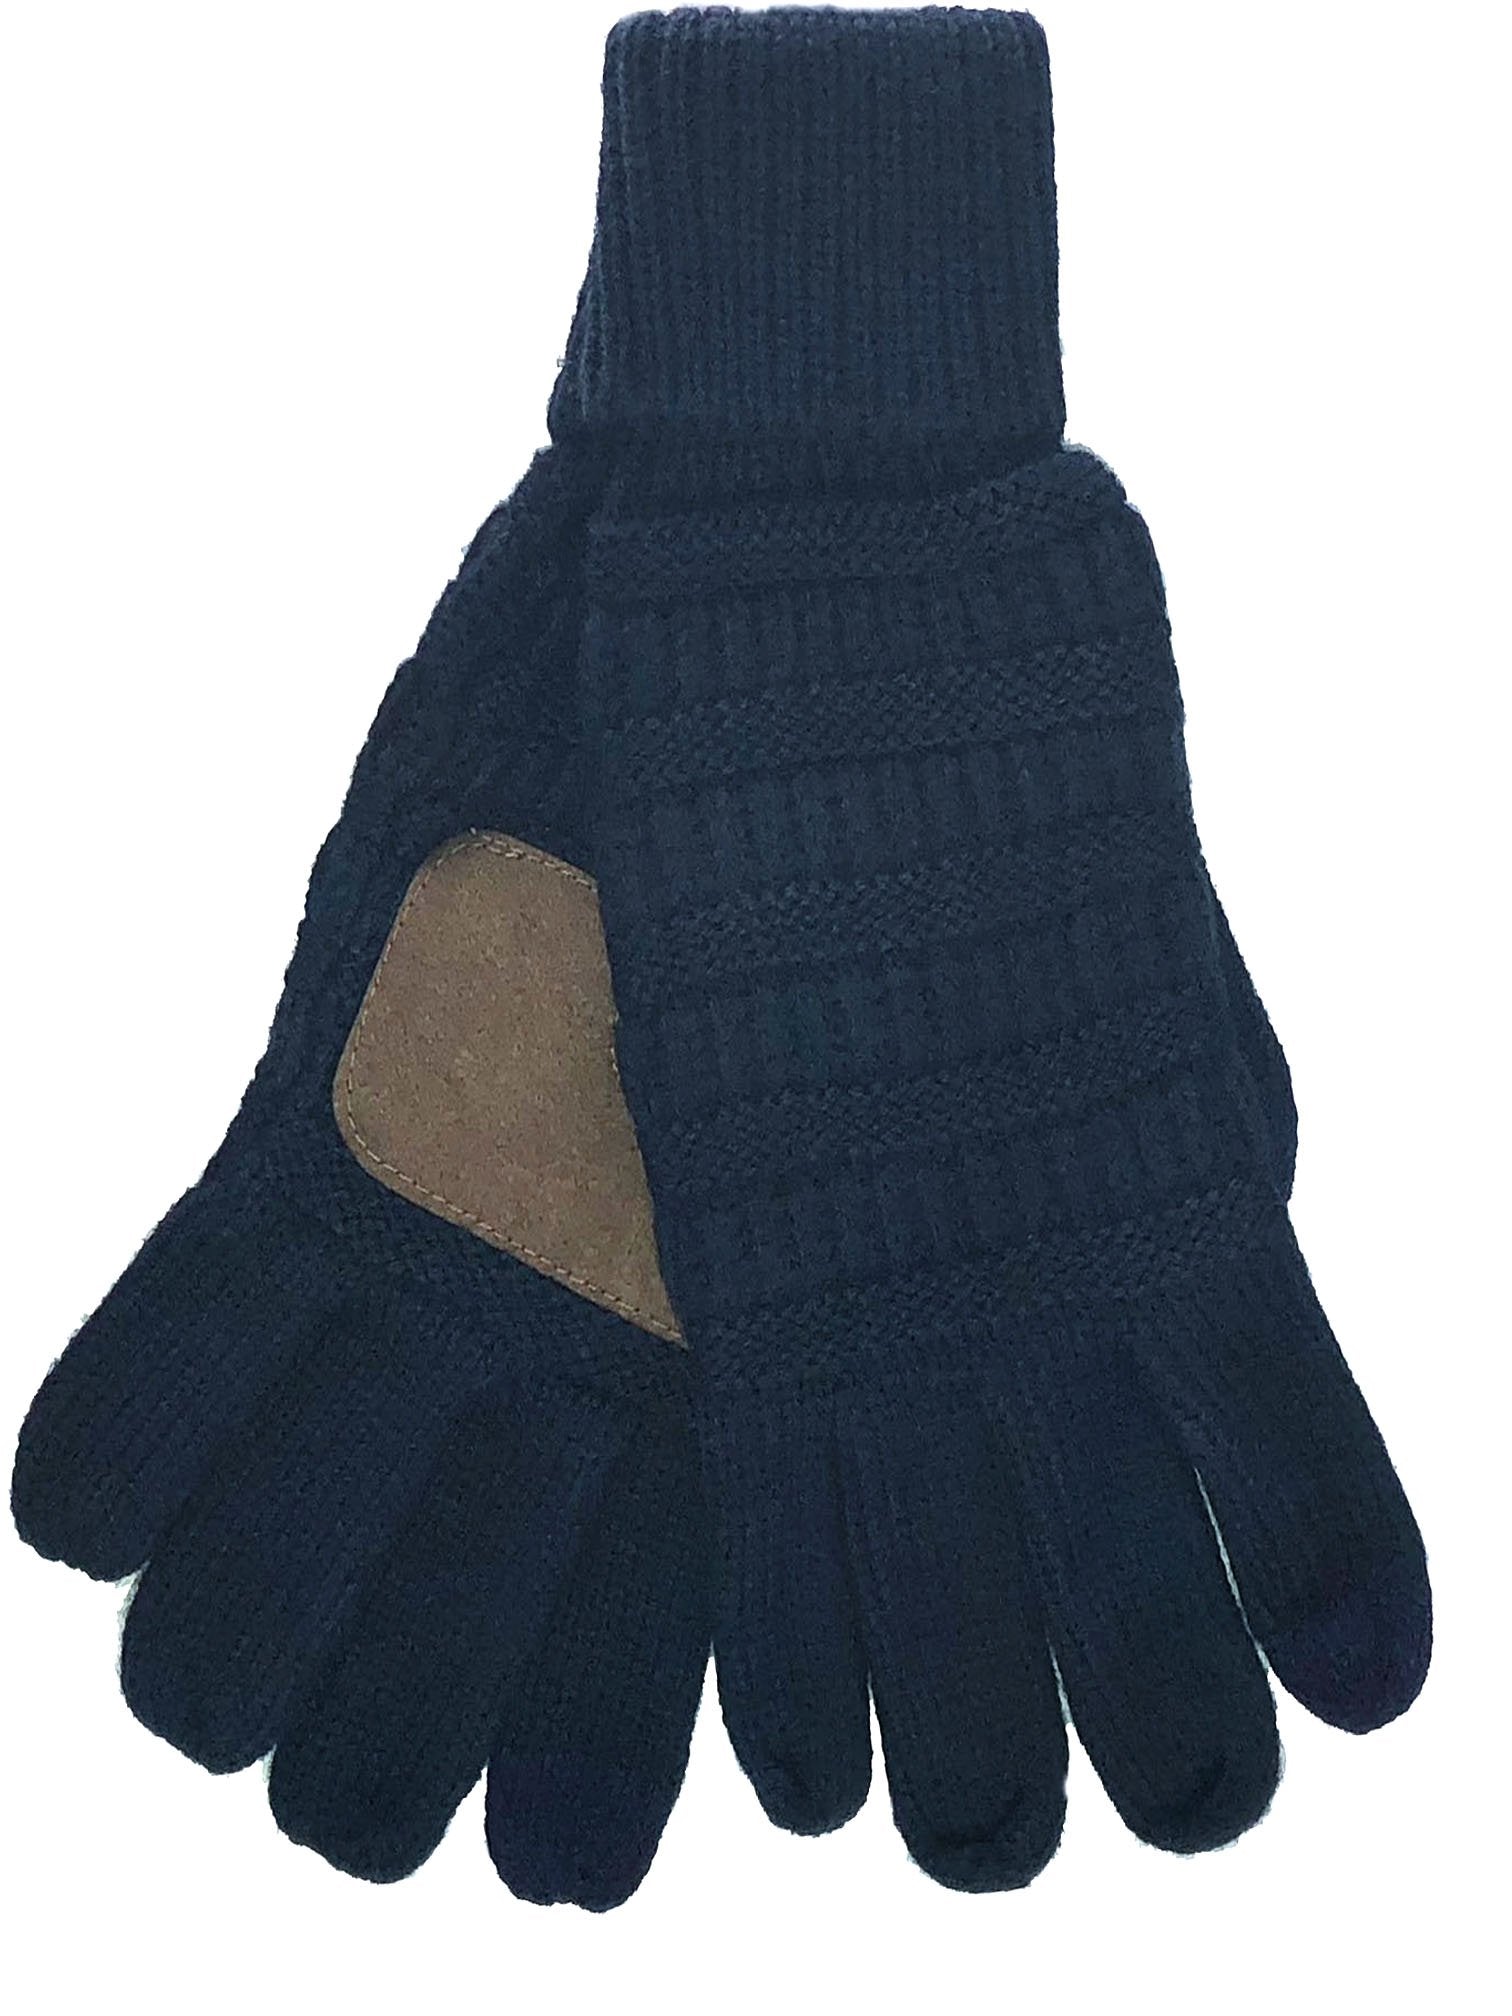 G-20 C.C Navy Gloves